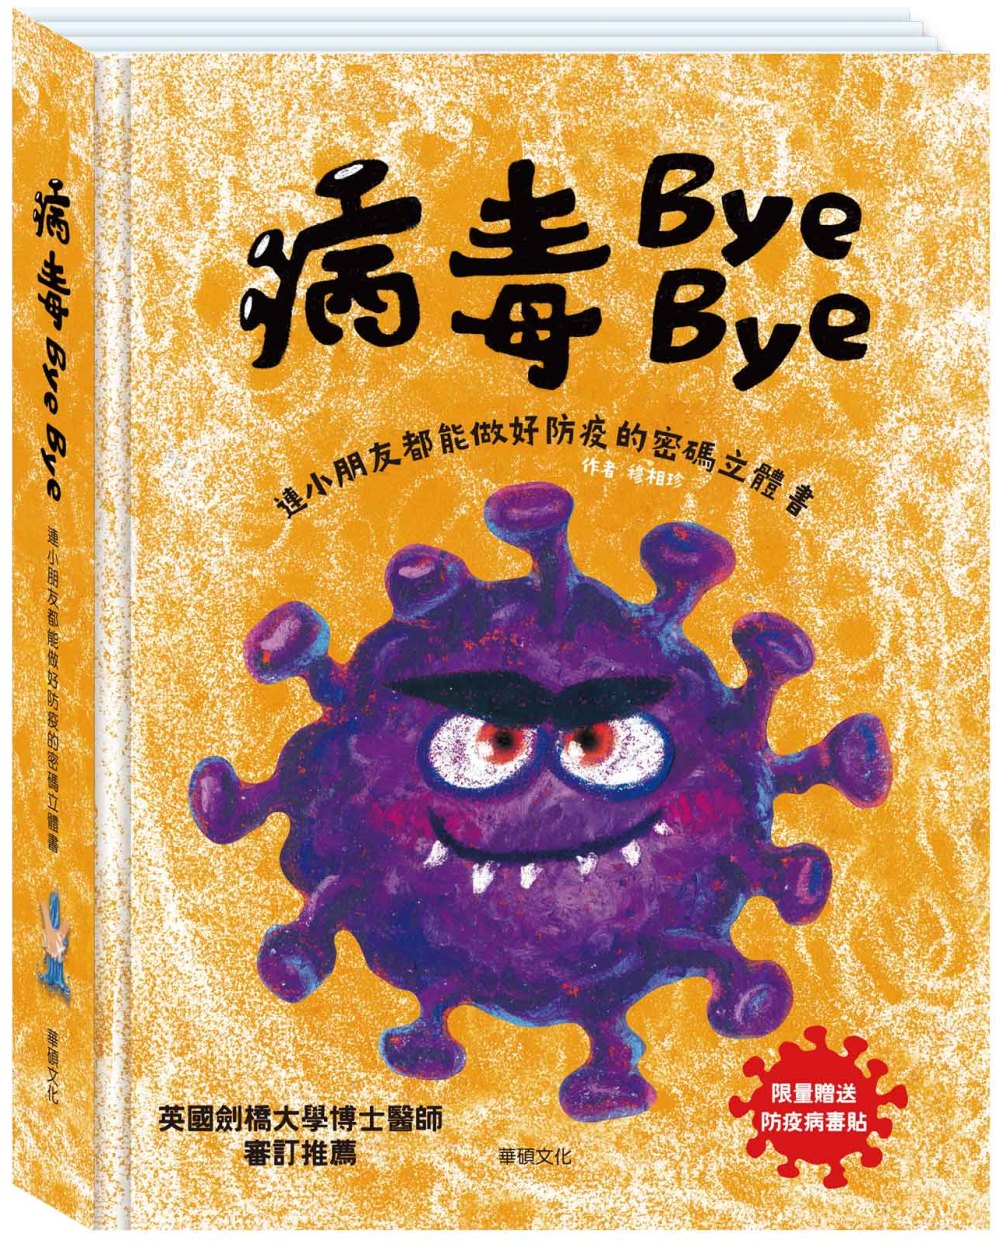 病毒Bye Bye：連小朋友都能做好防疫的密碼立體書